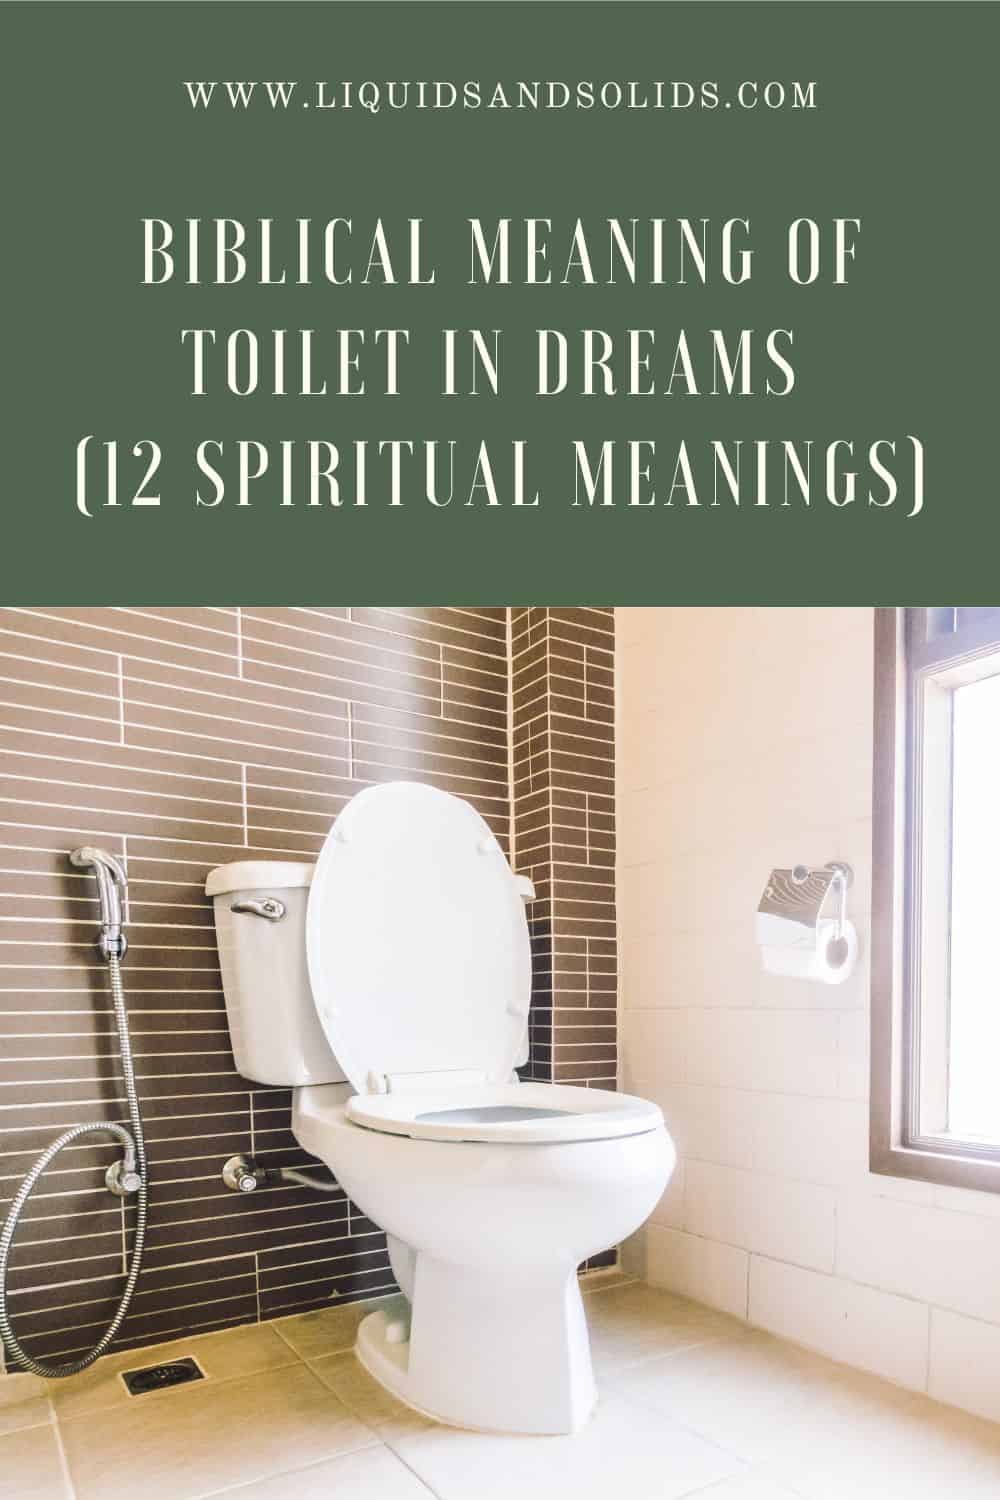  ტუალეტის ბიბლიური მნიშვნელობა სიზმარში (12 სულიერი მნიშვნელობა)